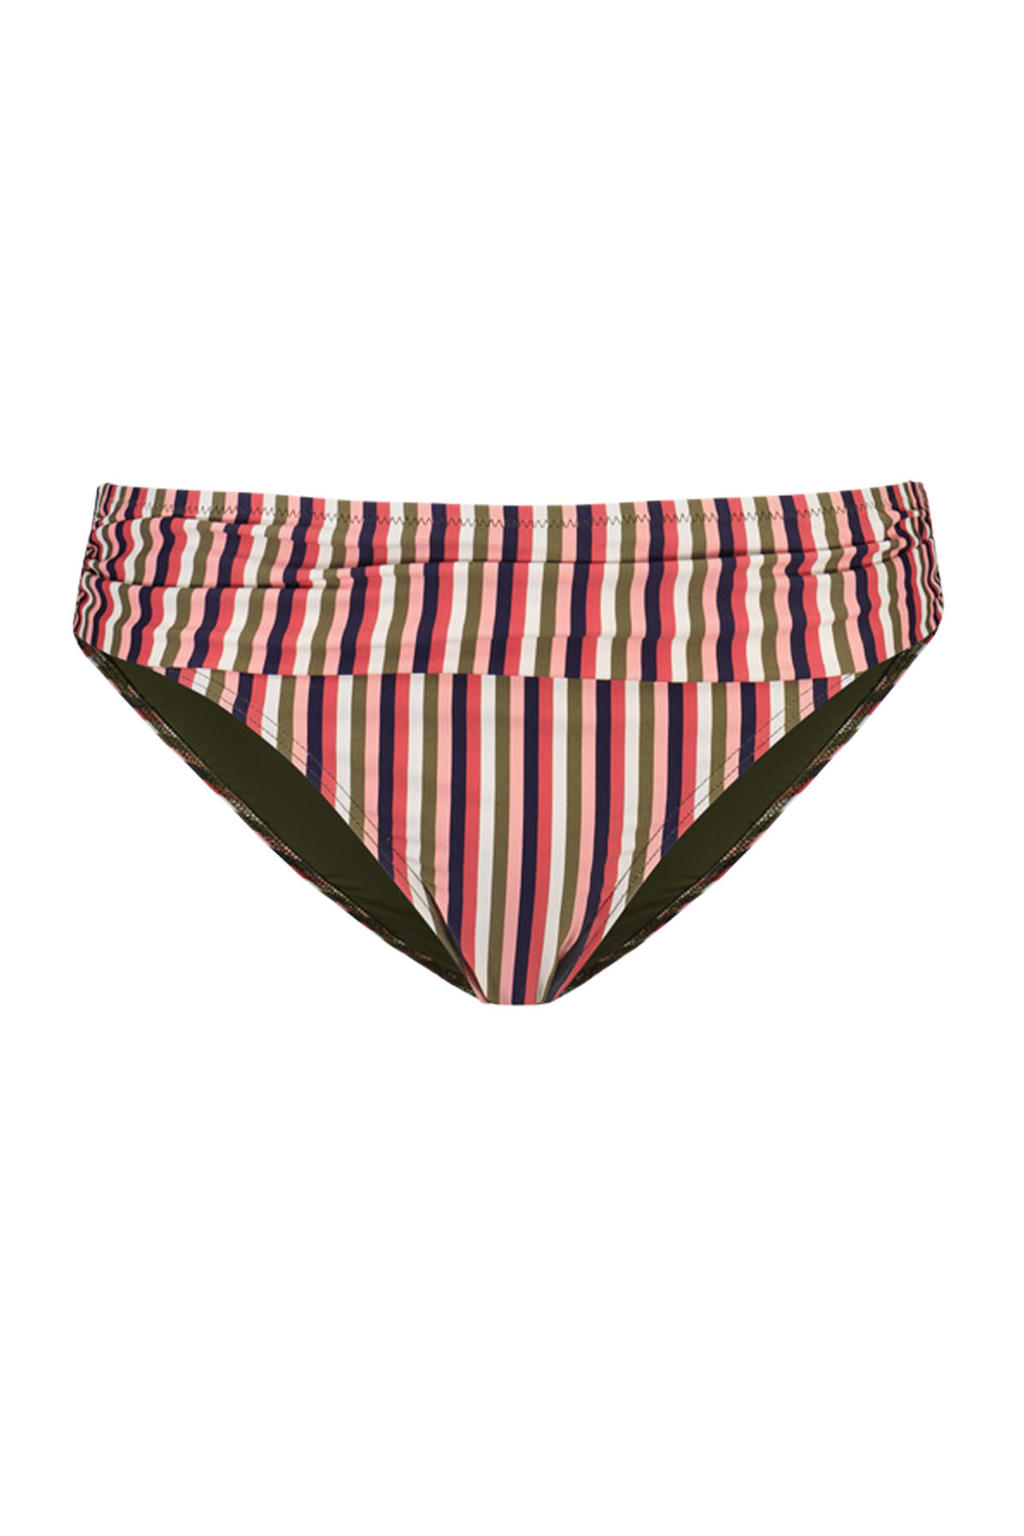 Cyell gestreept bikinibroekje Sassy Stripe rood/groen/blauw/wit